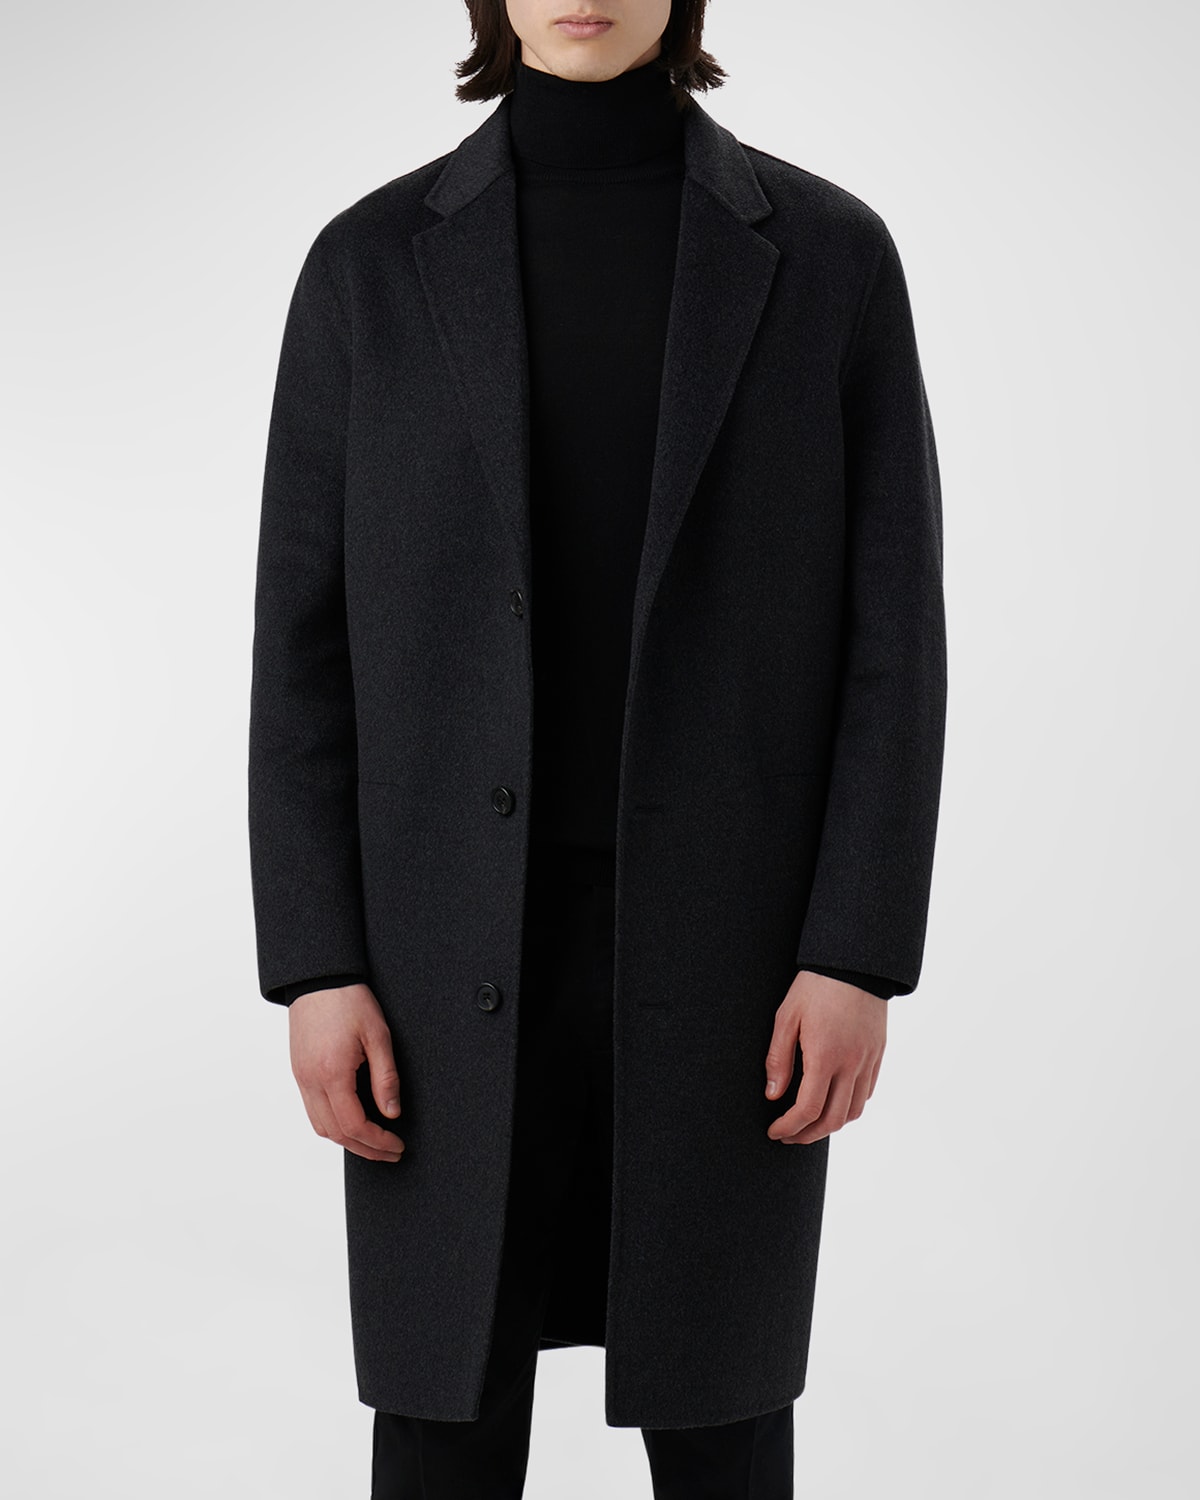 Men's 3-Button Solid Overcoat